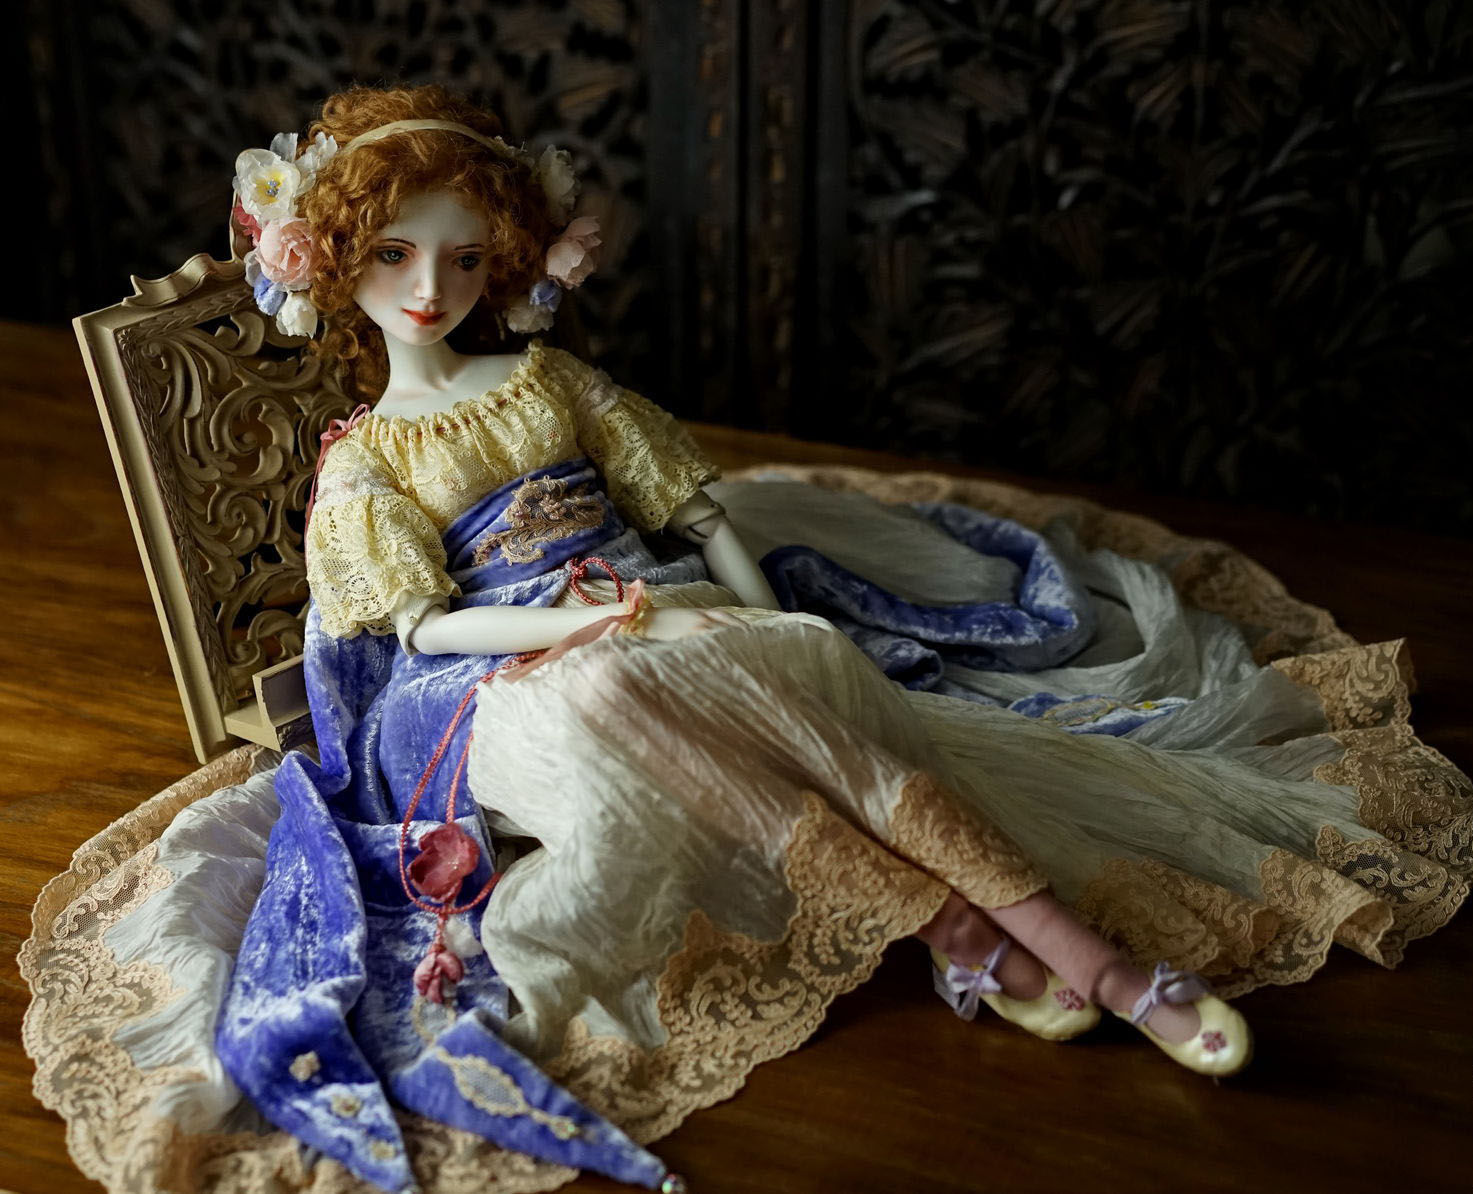 Фарфоровые грезы: восхитительные куклы Оксаны Сахаровой куклы, чтобы, кукла, работаю, кукол, будут, создания, работа, нужно, куклой, куклах, формы, мастерской, каждый, стараюсь, всегда, сказать, скульптурой, Оксана, которой